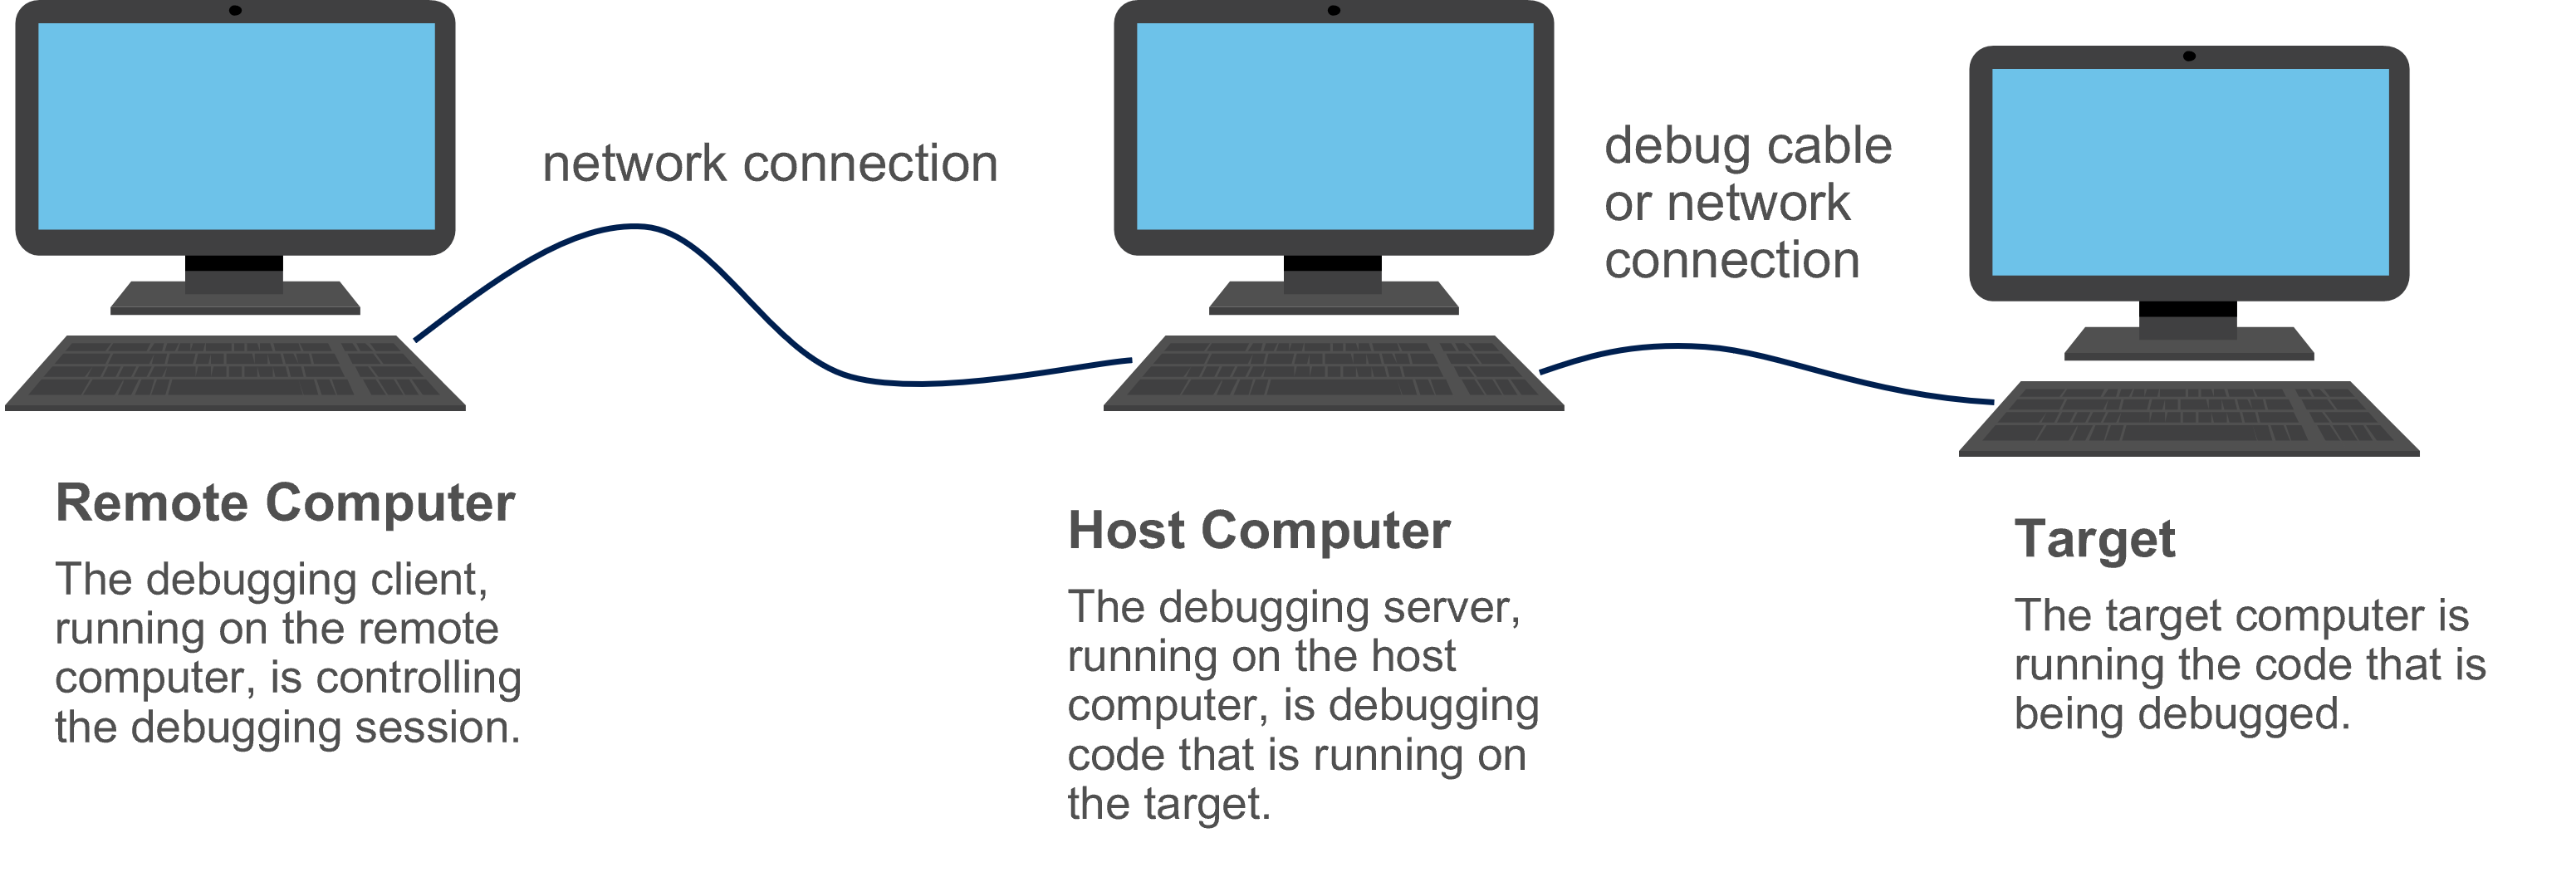 커널 모드 디버깅을 위해 연결된 원격, 호스트 및 대상 컴퓨터를 보여 주는 다이어그램